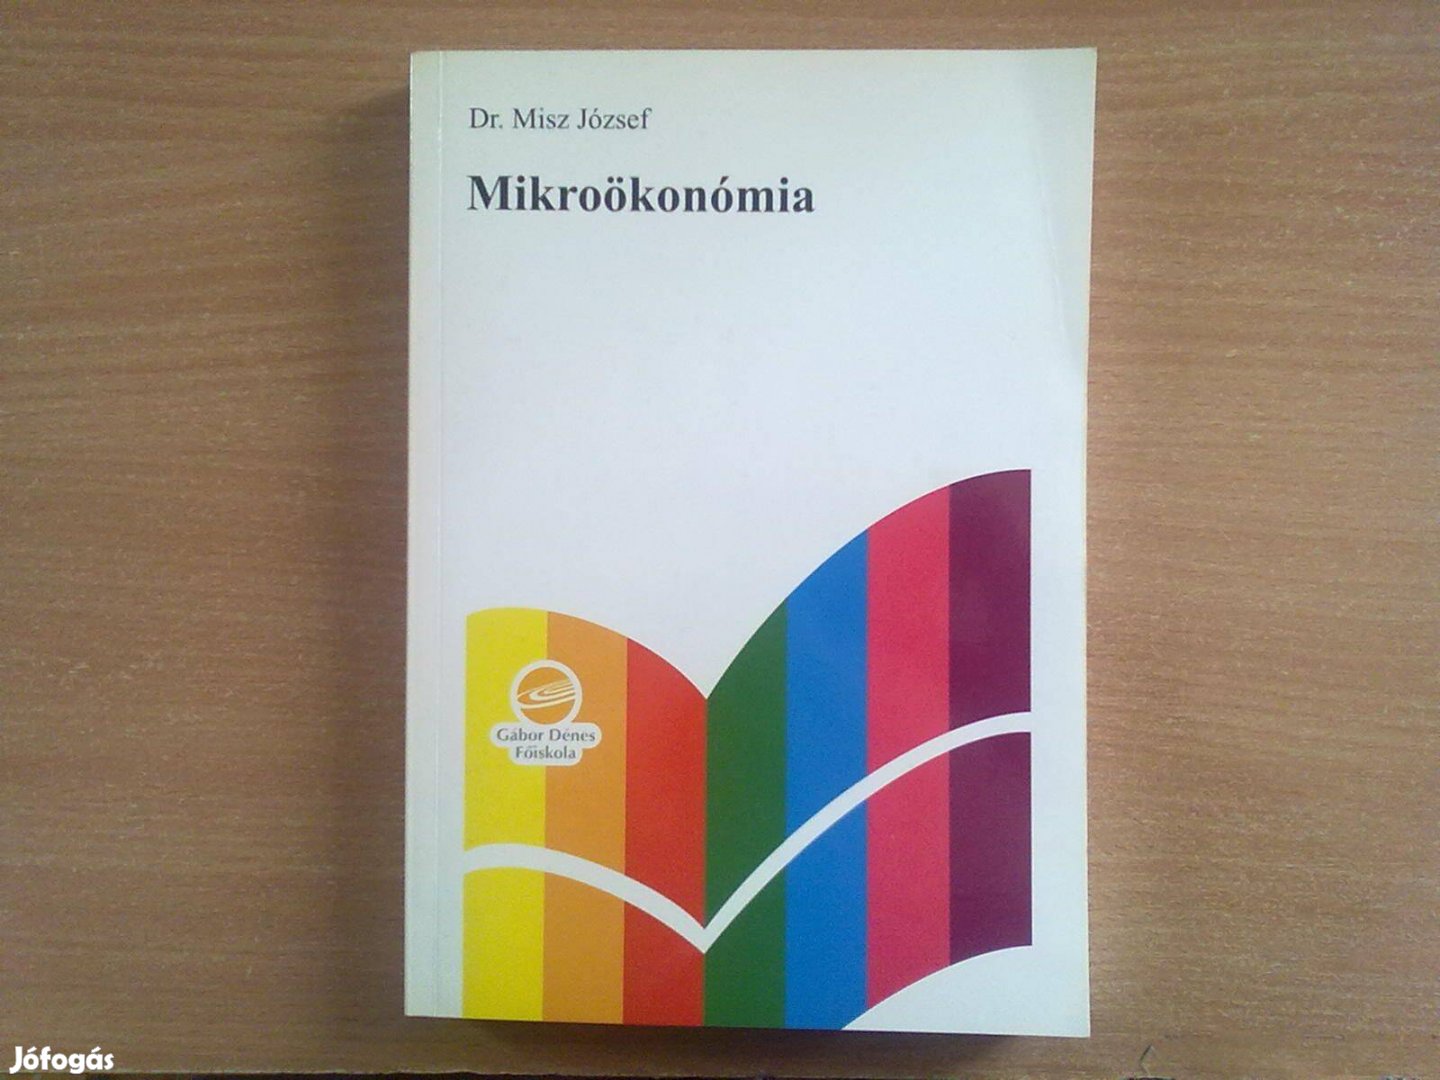 Dr. Misz József: Mikroökonómia (Egyszer olvasott, újszerű könyv)